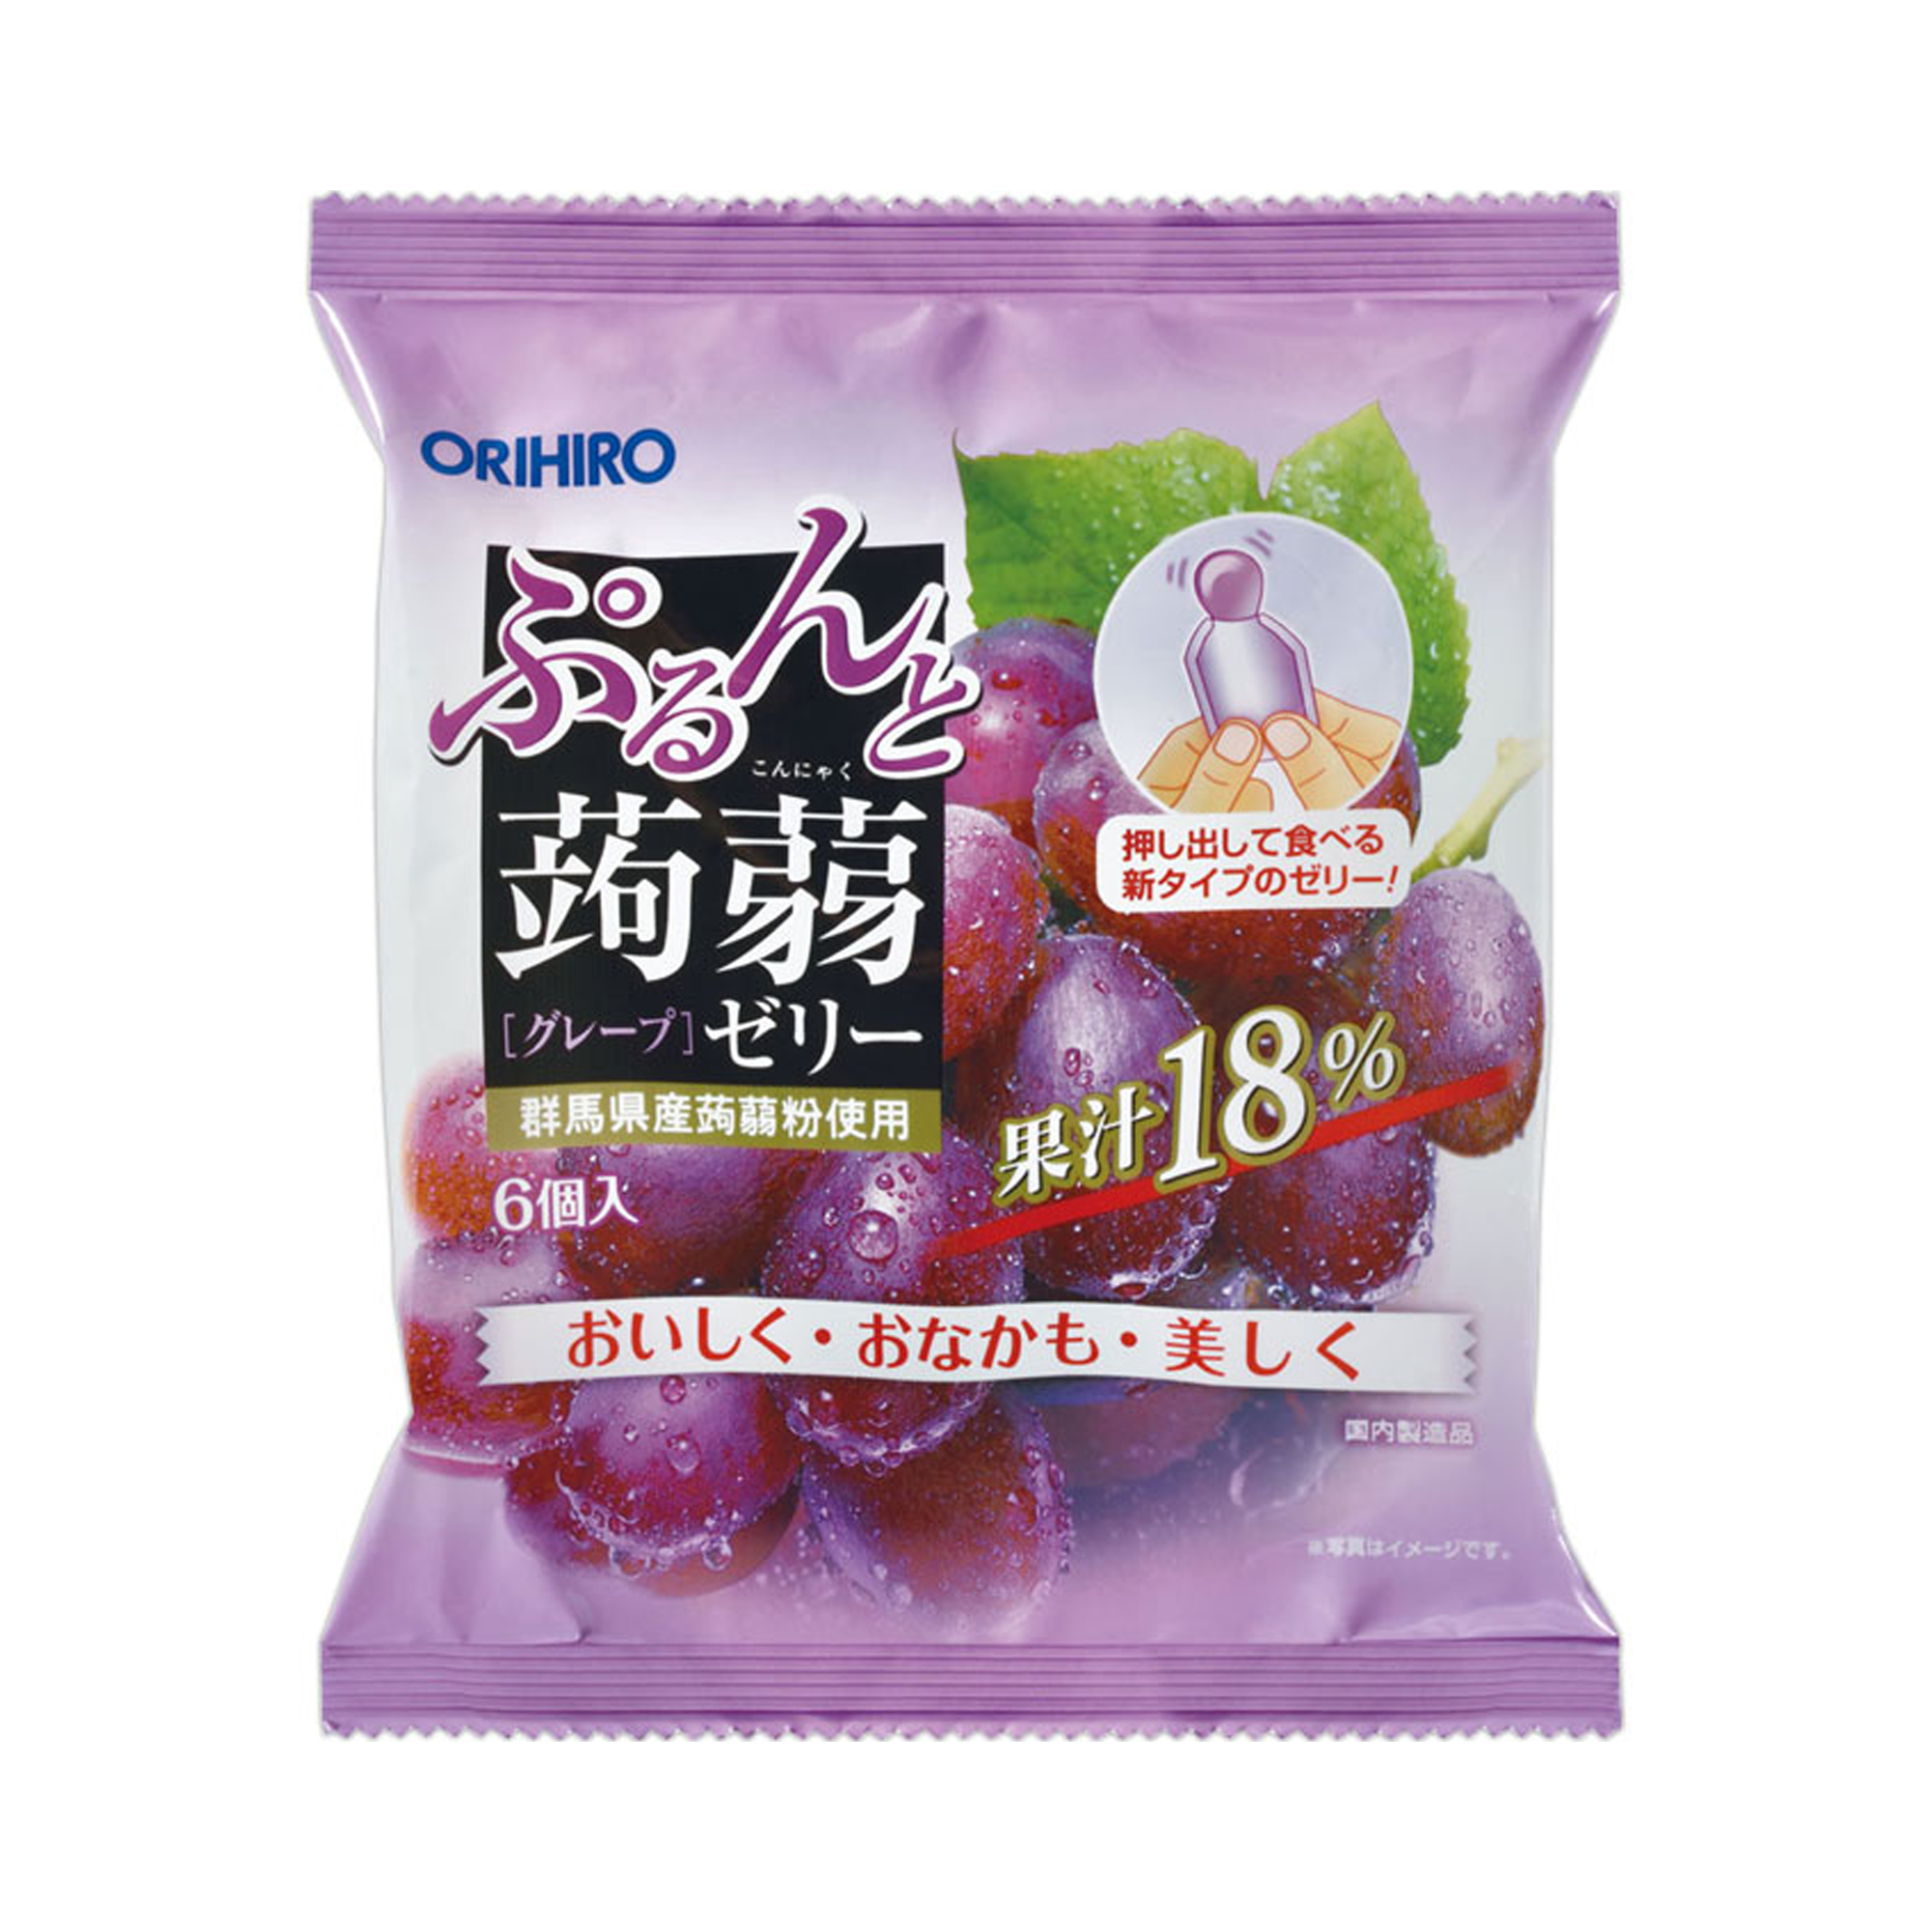 ORIHIRO 蒟蒻果冻 挤挤袋 葡萄味 20g×6袋